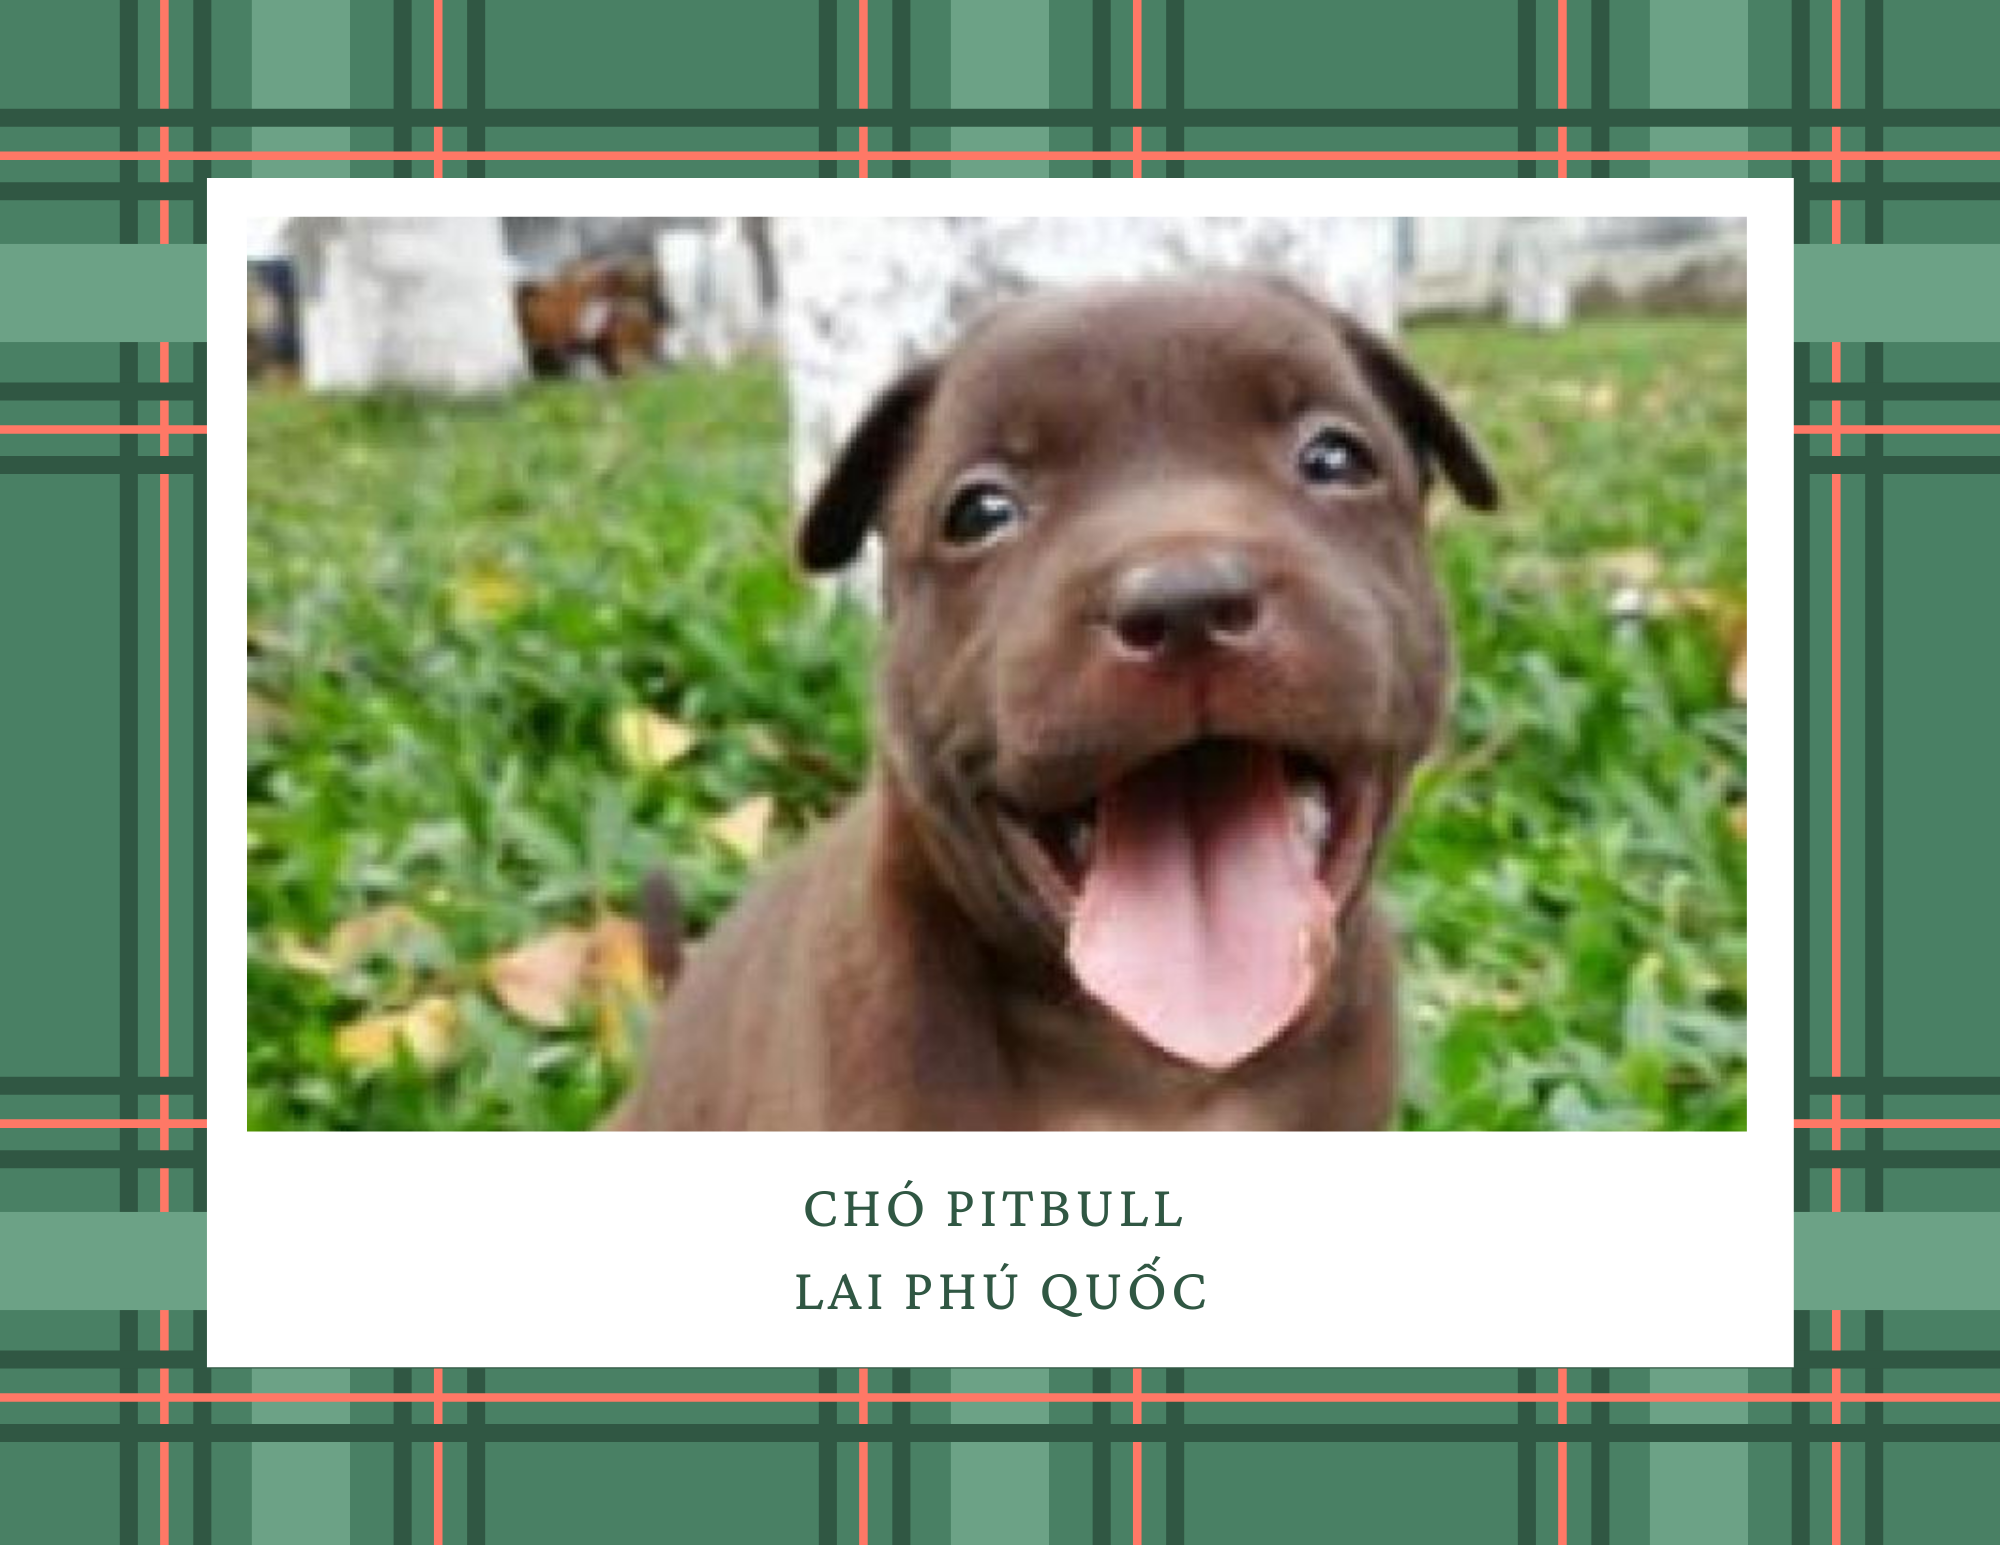 Chó Pitbull - Nguồn gốc, đặc điểm, giá bán và cách thuần hóa - 15